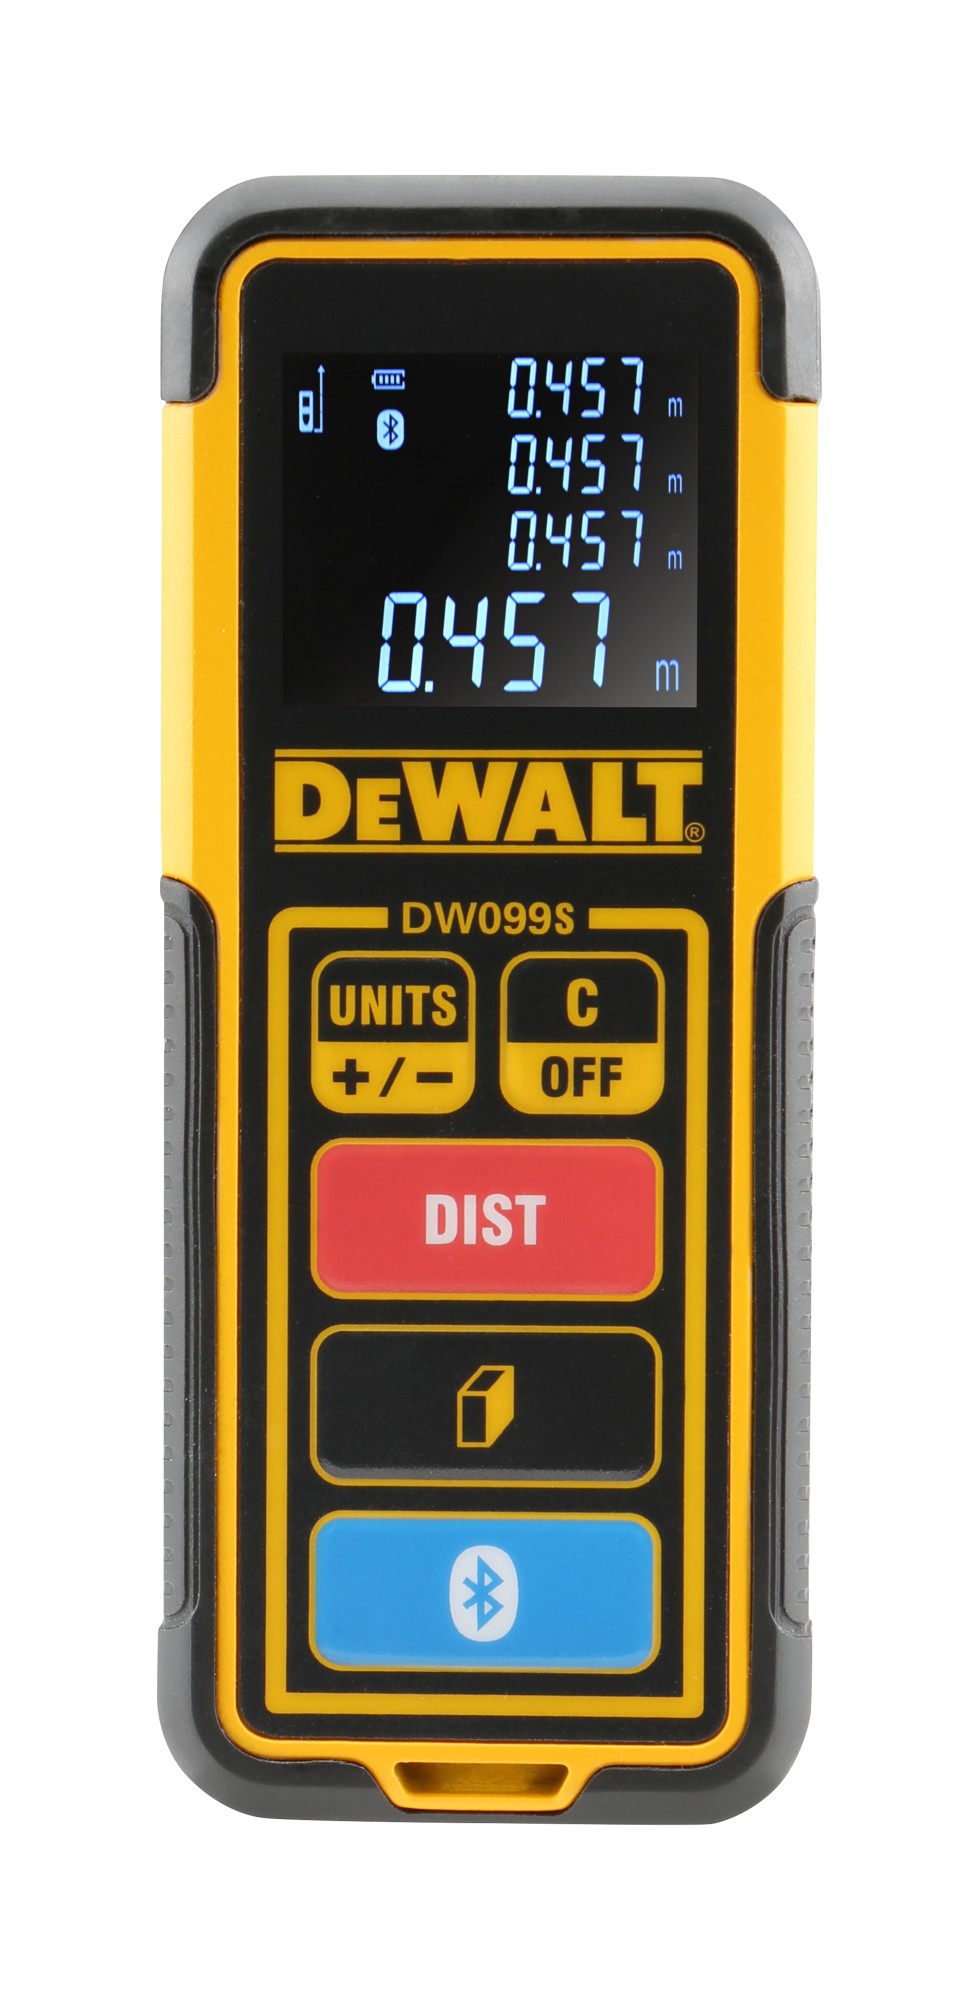 Prematuro ensayo Idealmente Dewalt DW099S-XJ - Medidor láser de distancias 30m con Bluetooth -  ✔️Ferreteria Indoostrial.com | Ferretería online barata✔️